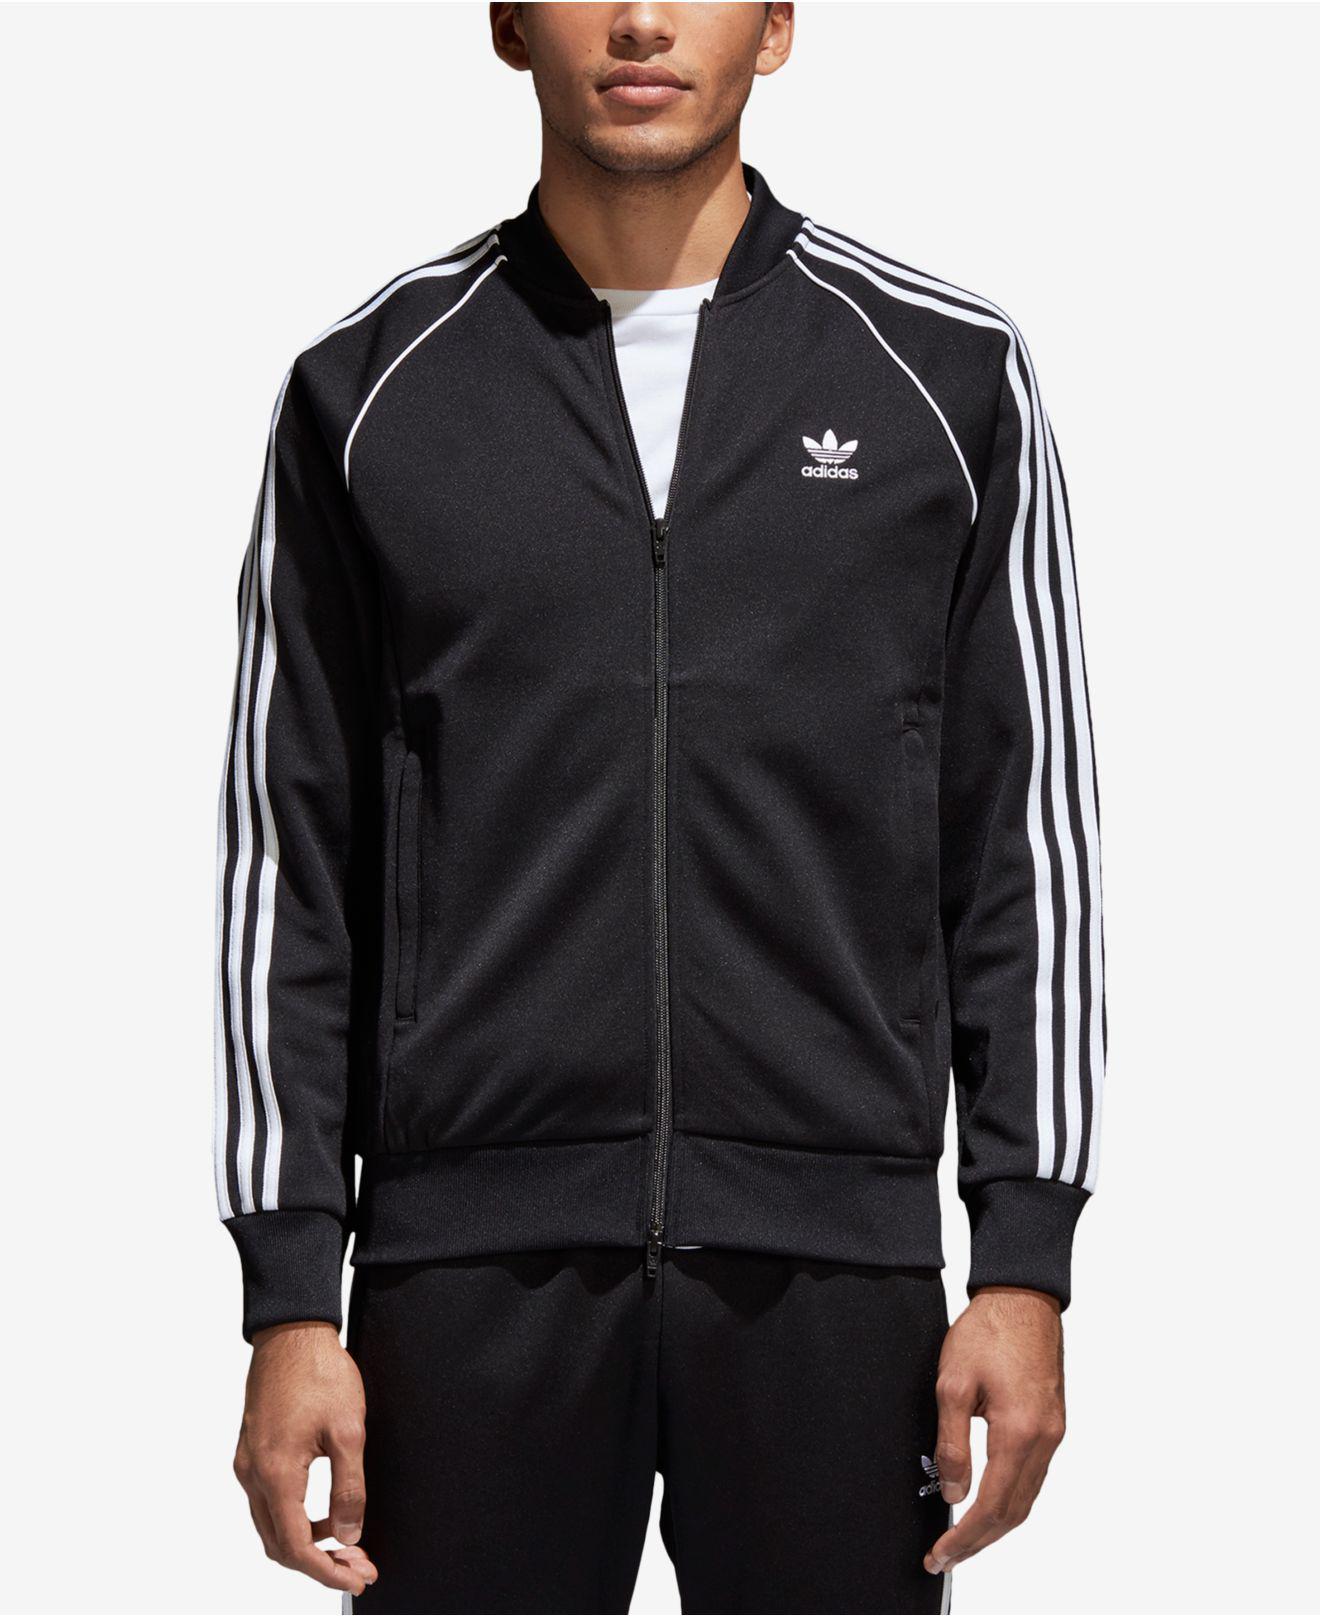 Lyst - Adidas Men's Originals Sst Track Jacket in Black for Men